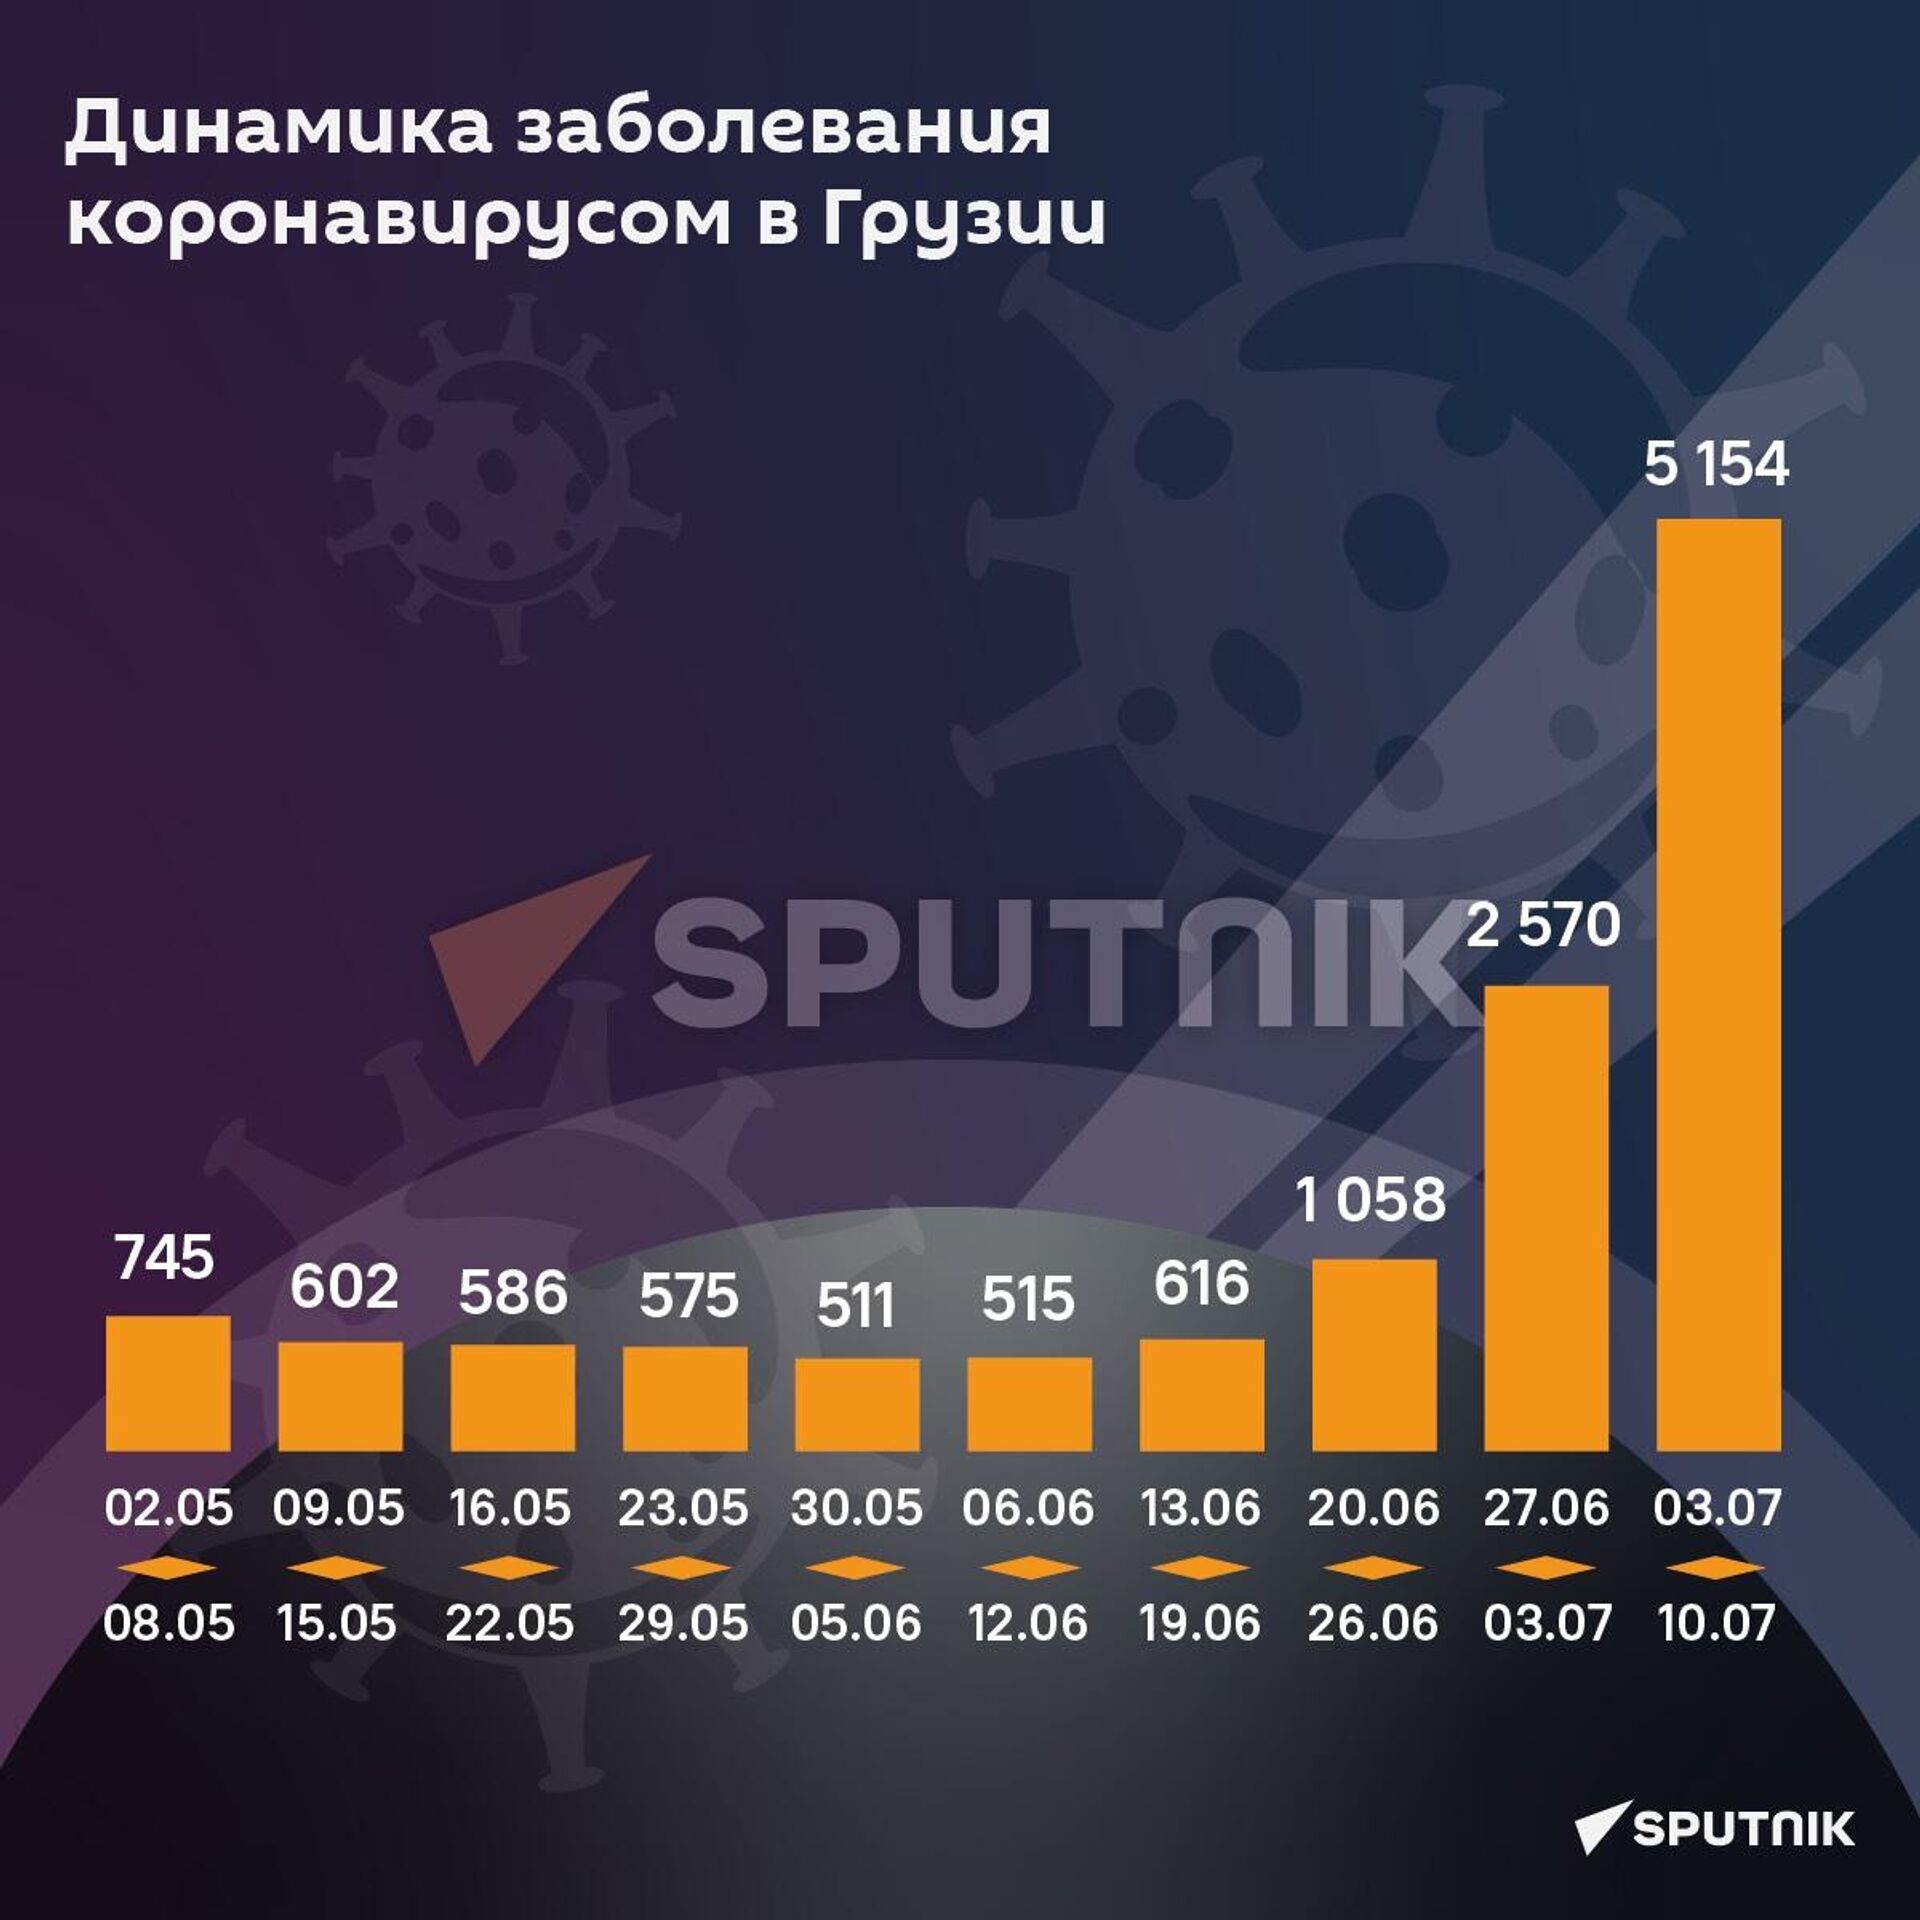 Динамика заболевания коронавирусом: май - июль 2022 - Sputnik Грузия, 1920, 13.07.2022